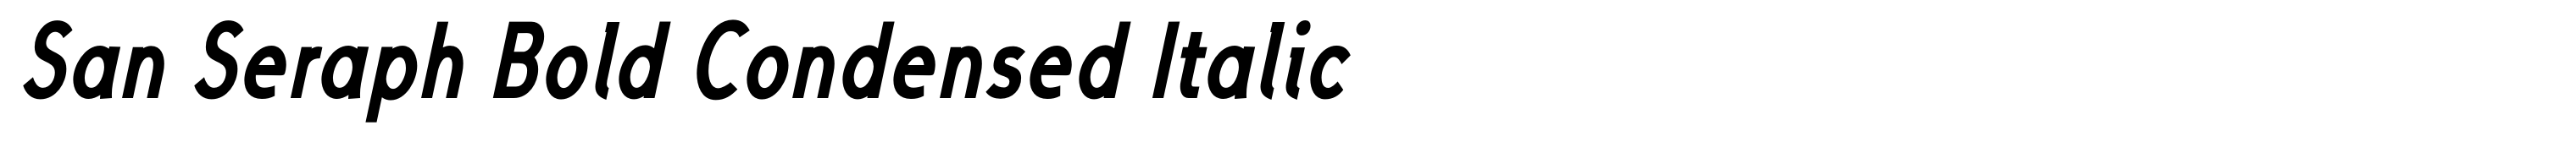 San Seraph Bold Condensed Italic